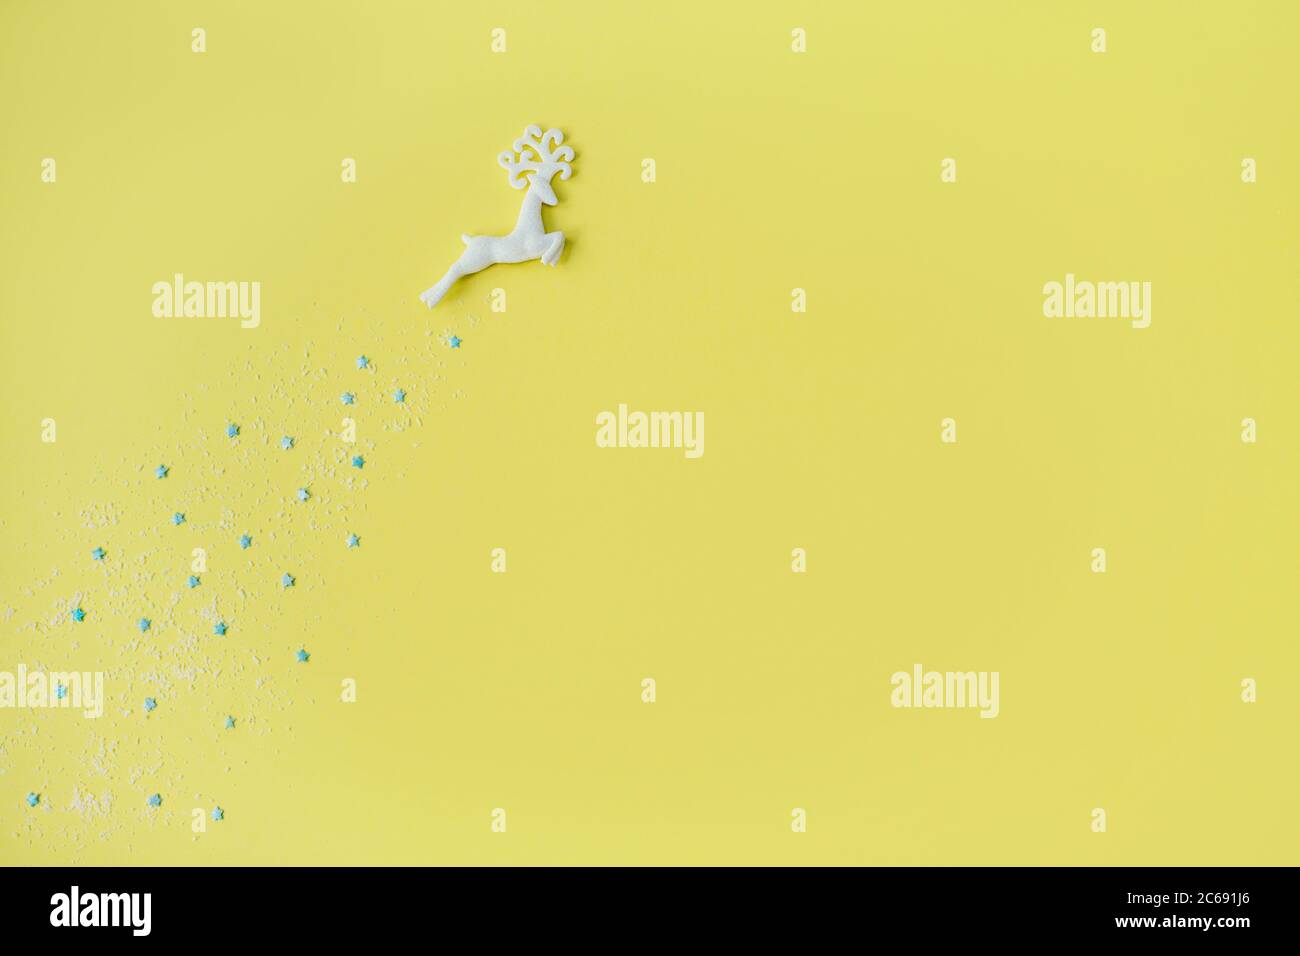 Hermoso ciervo de Navidad con estrellas sobre fondo amarillo. Diseño plano. Espacio de copia. Horizontal. Foto de stock